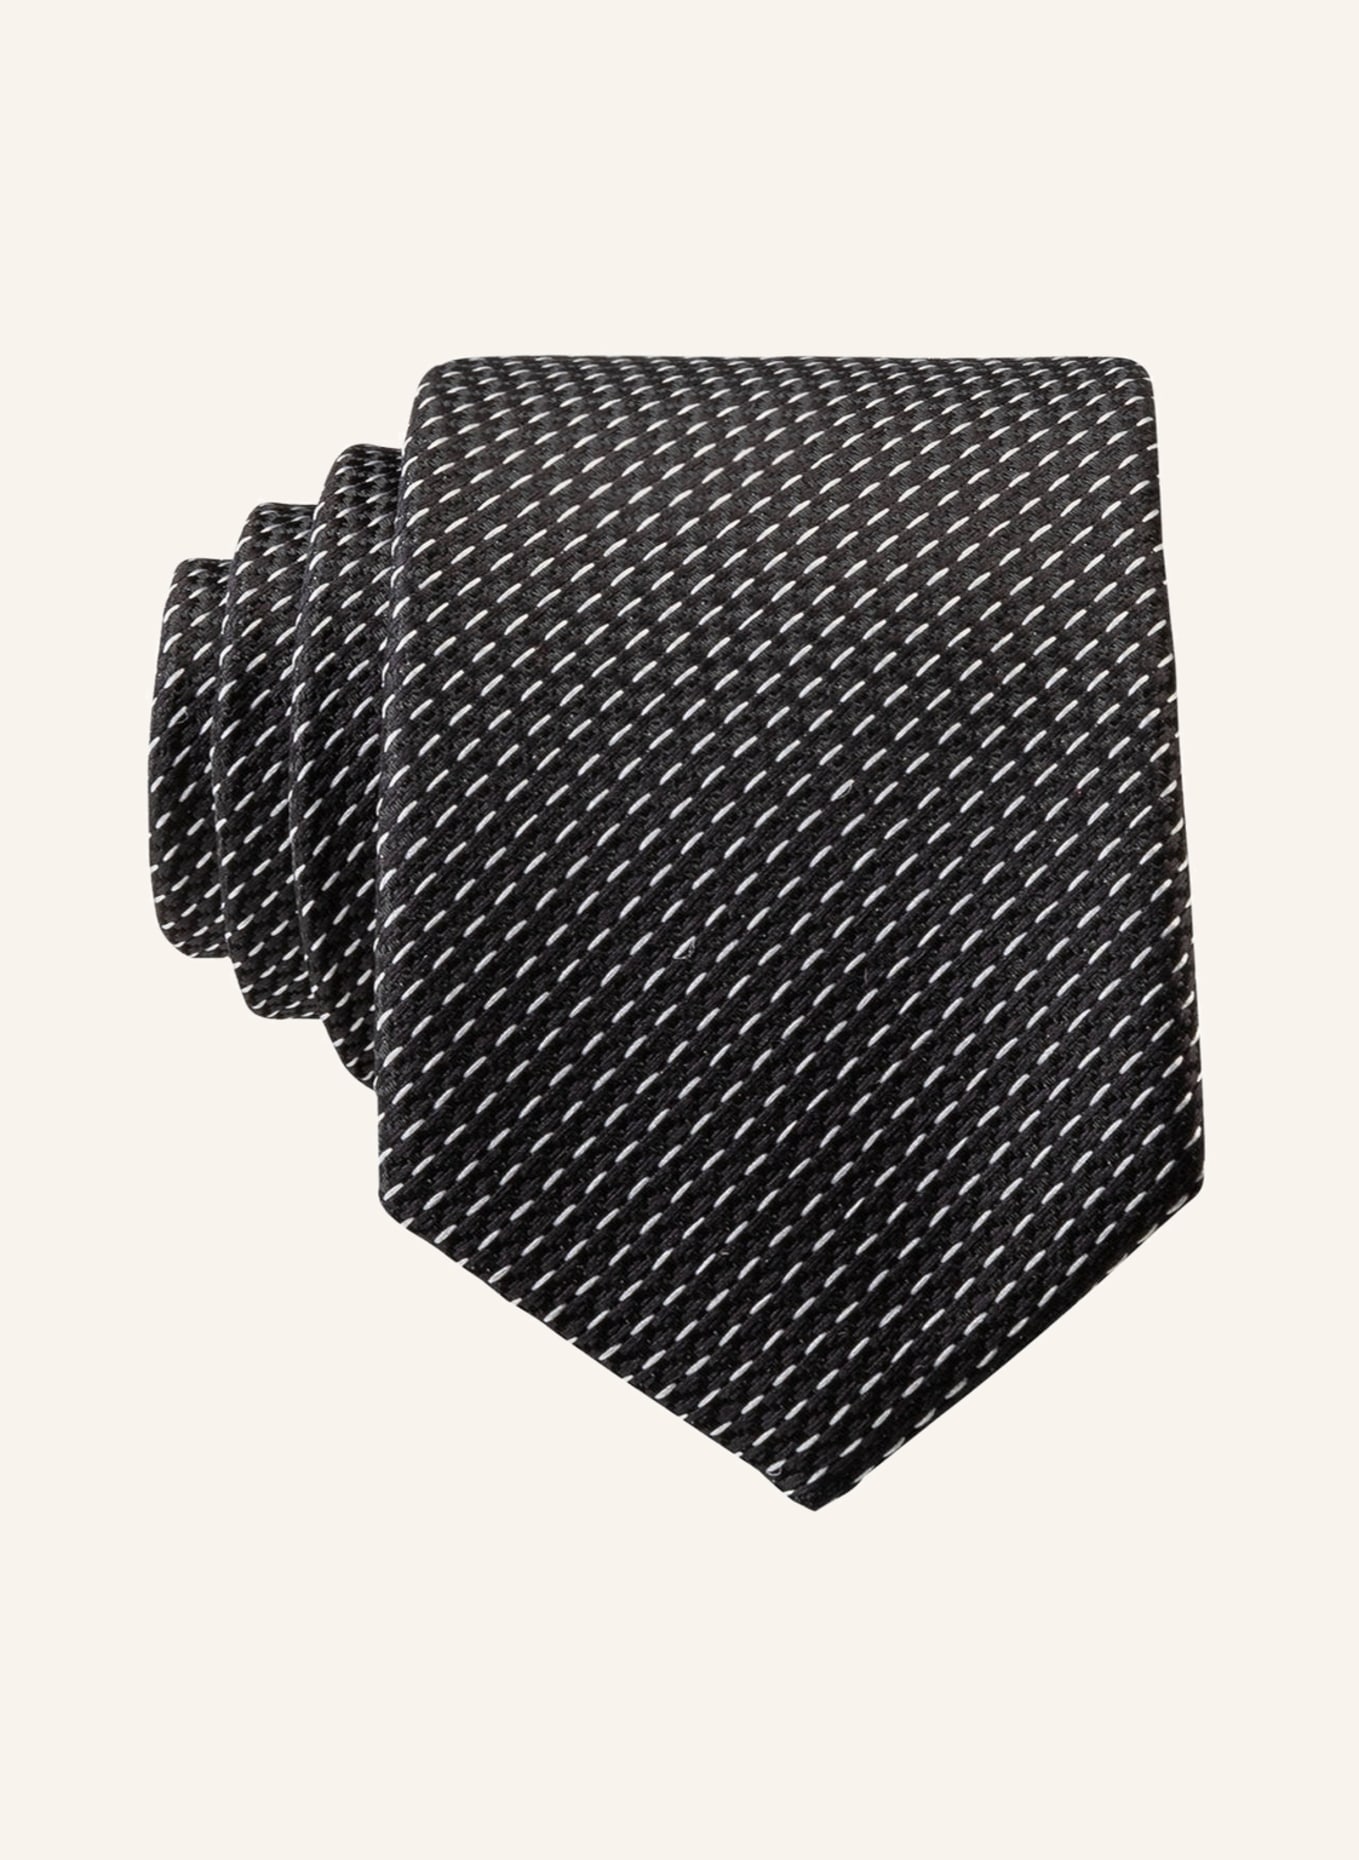 G.O.L. FINEST COLLECTION  Krawatte, Farbe: SCHWARZ/ WEISS (Bild 1)